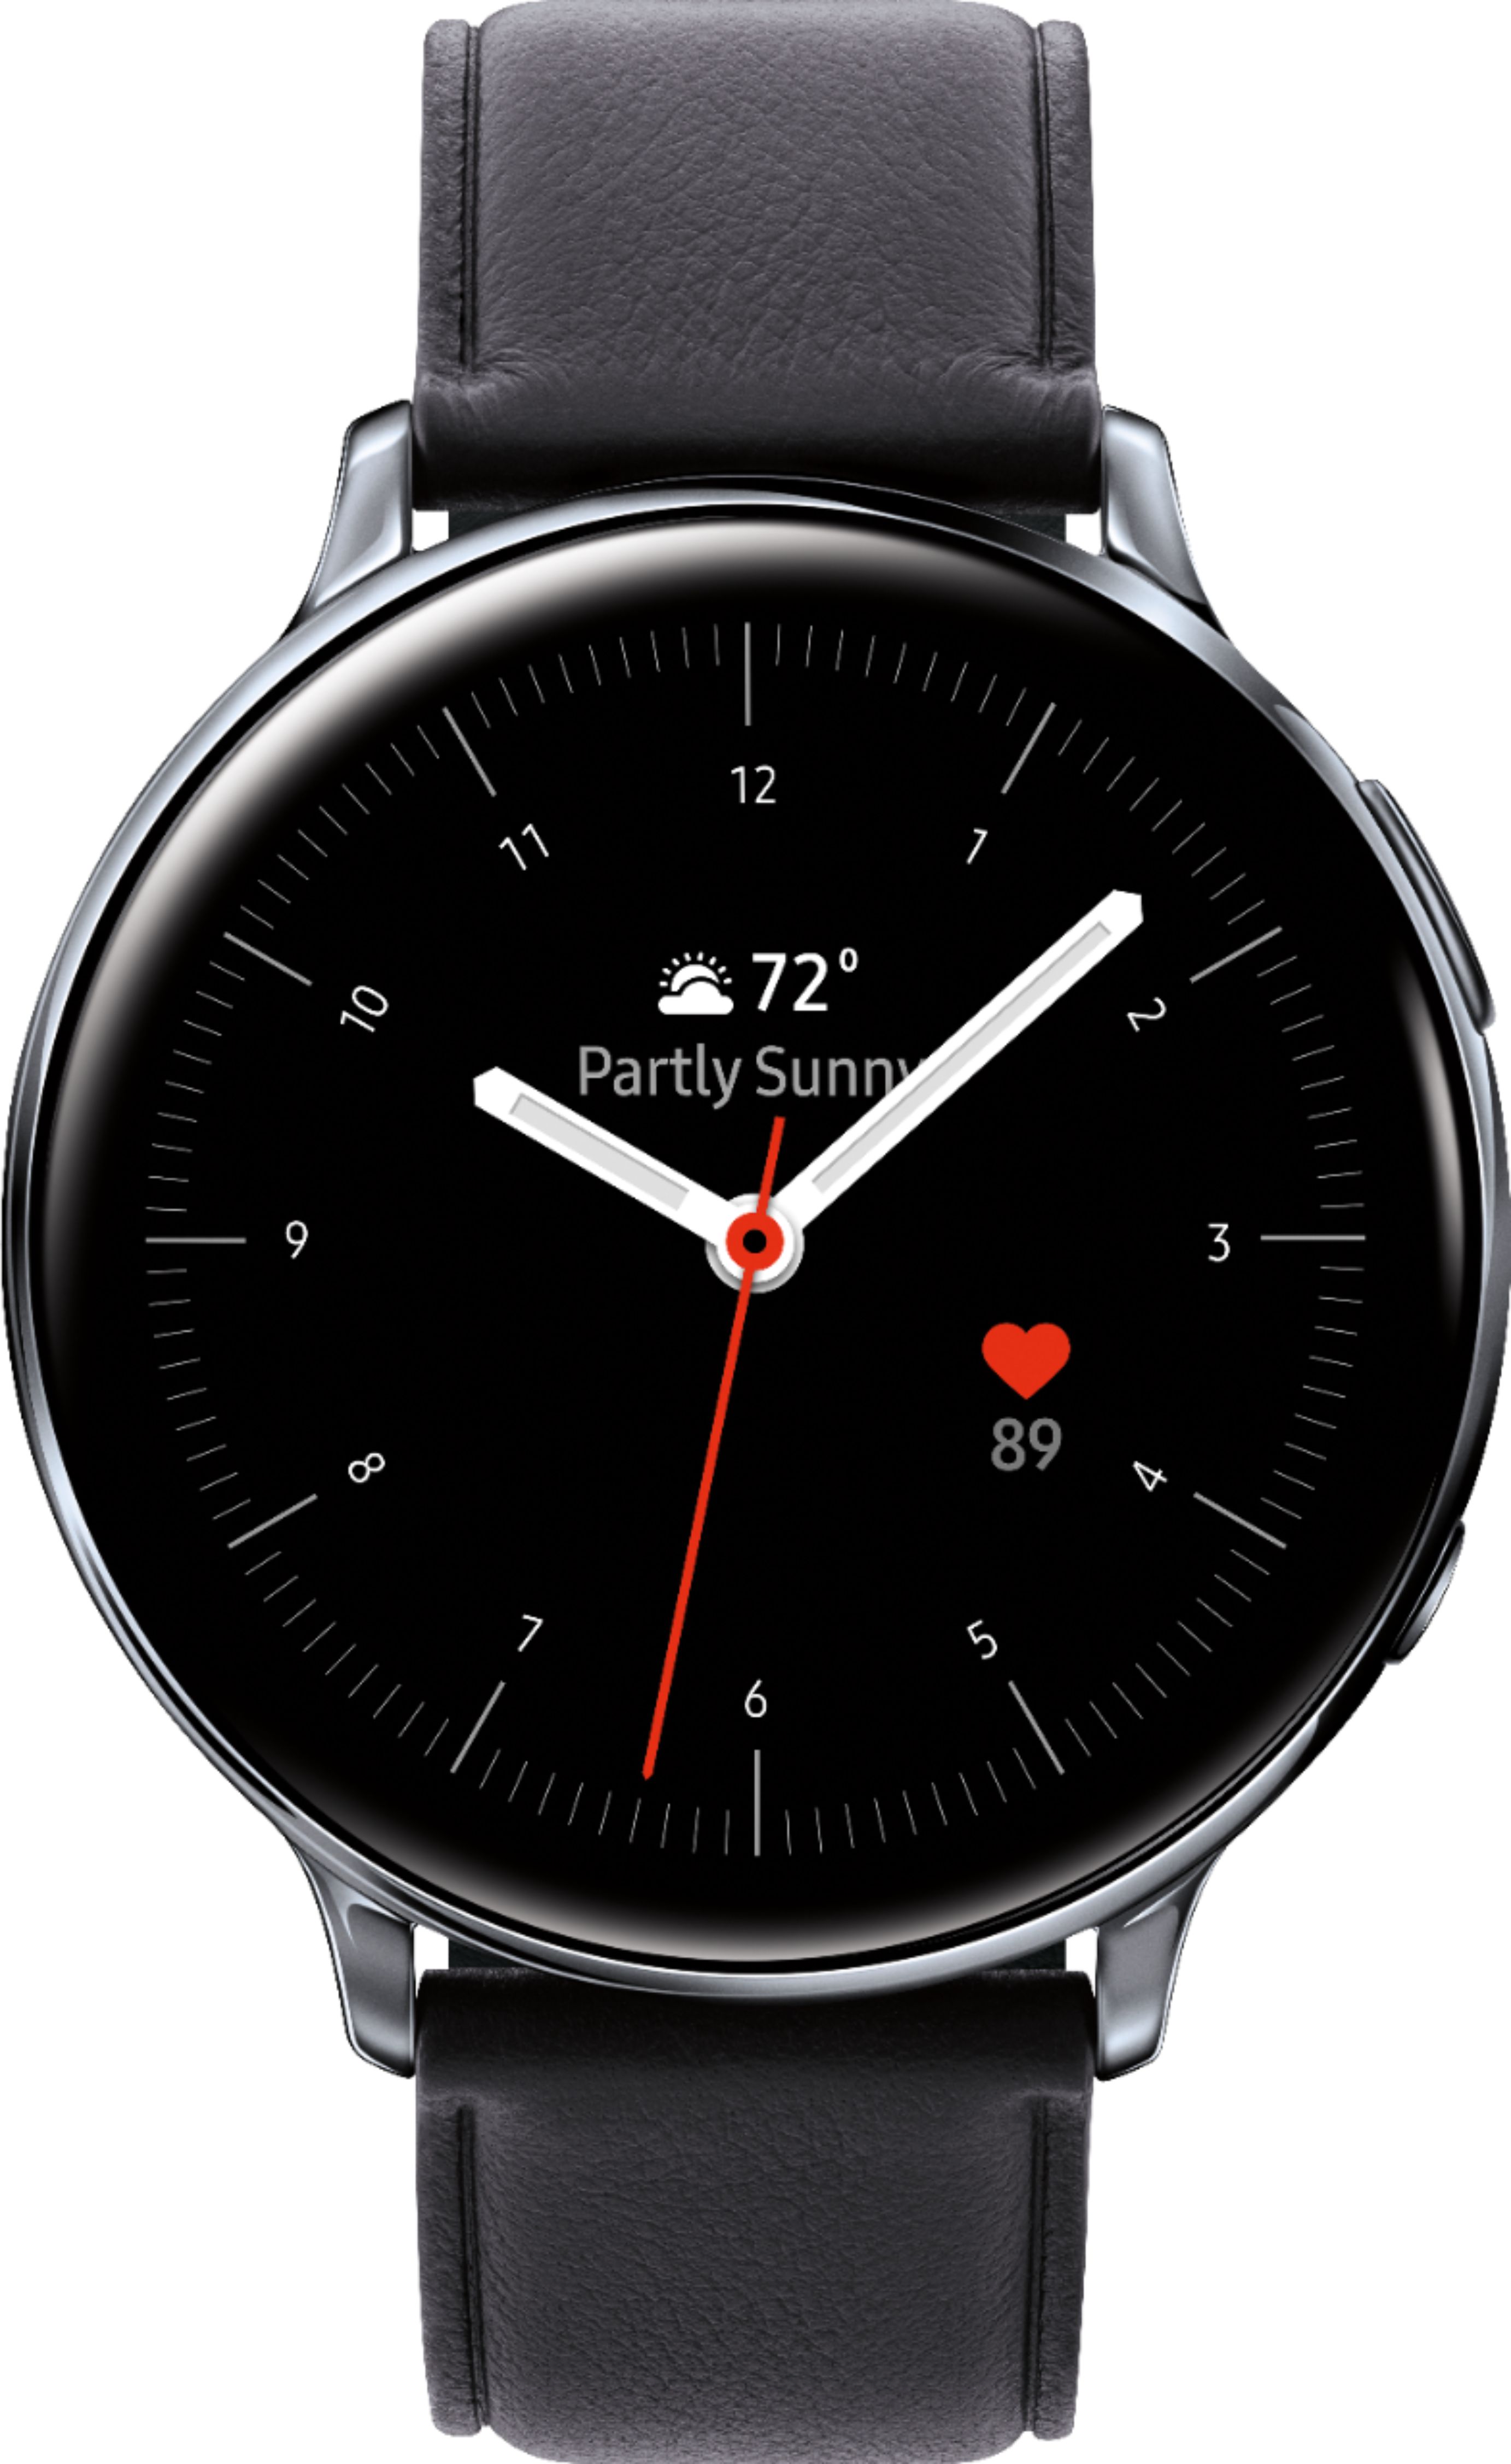 Samsung Galaxy Watch Active2 Smartwatch 44mm Stainless Steel LTE (Unlocked)  Silver SM-R825USSAXAR - Best Buy